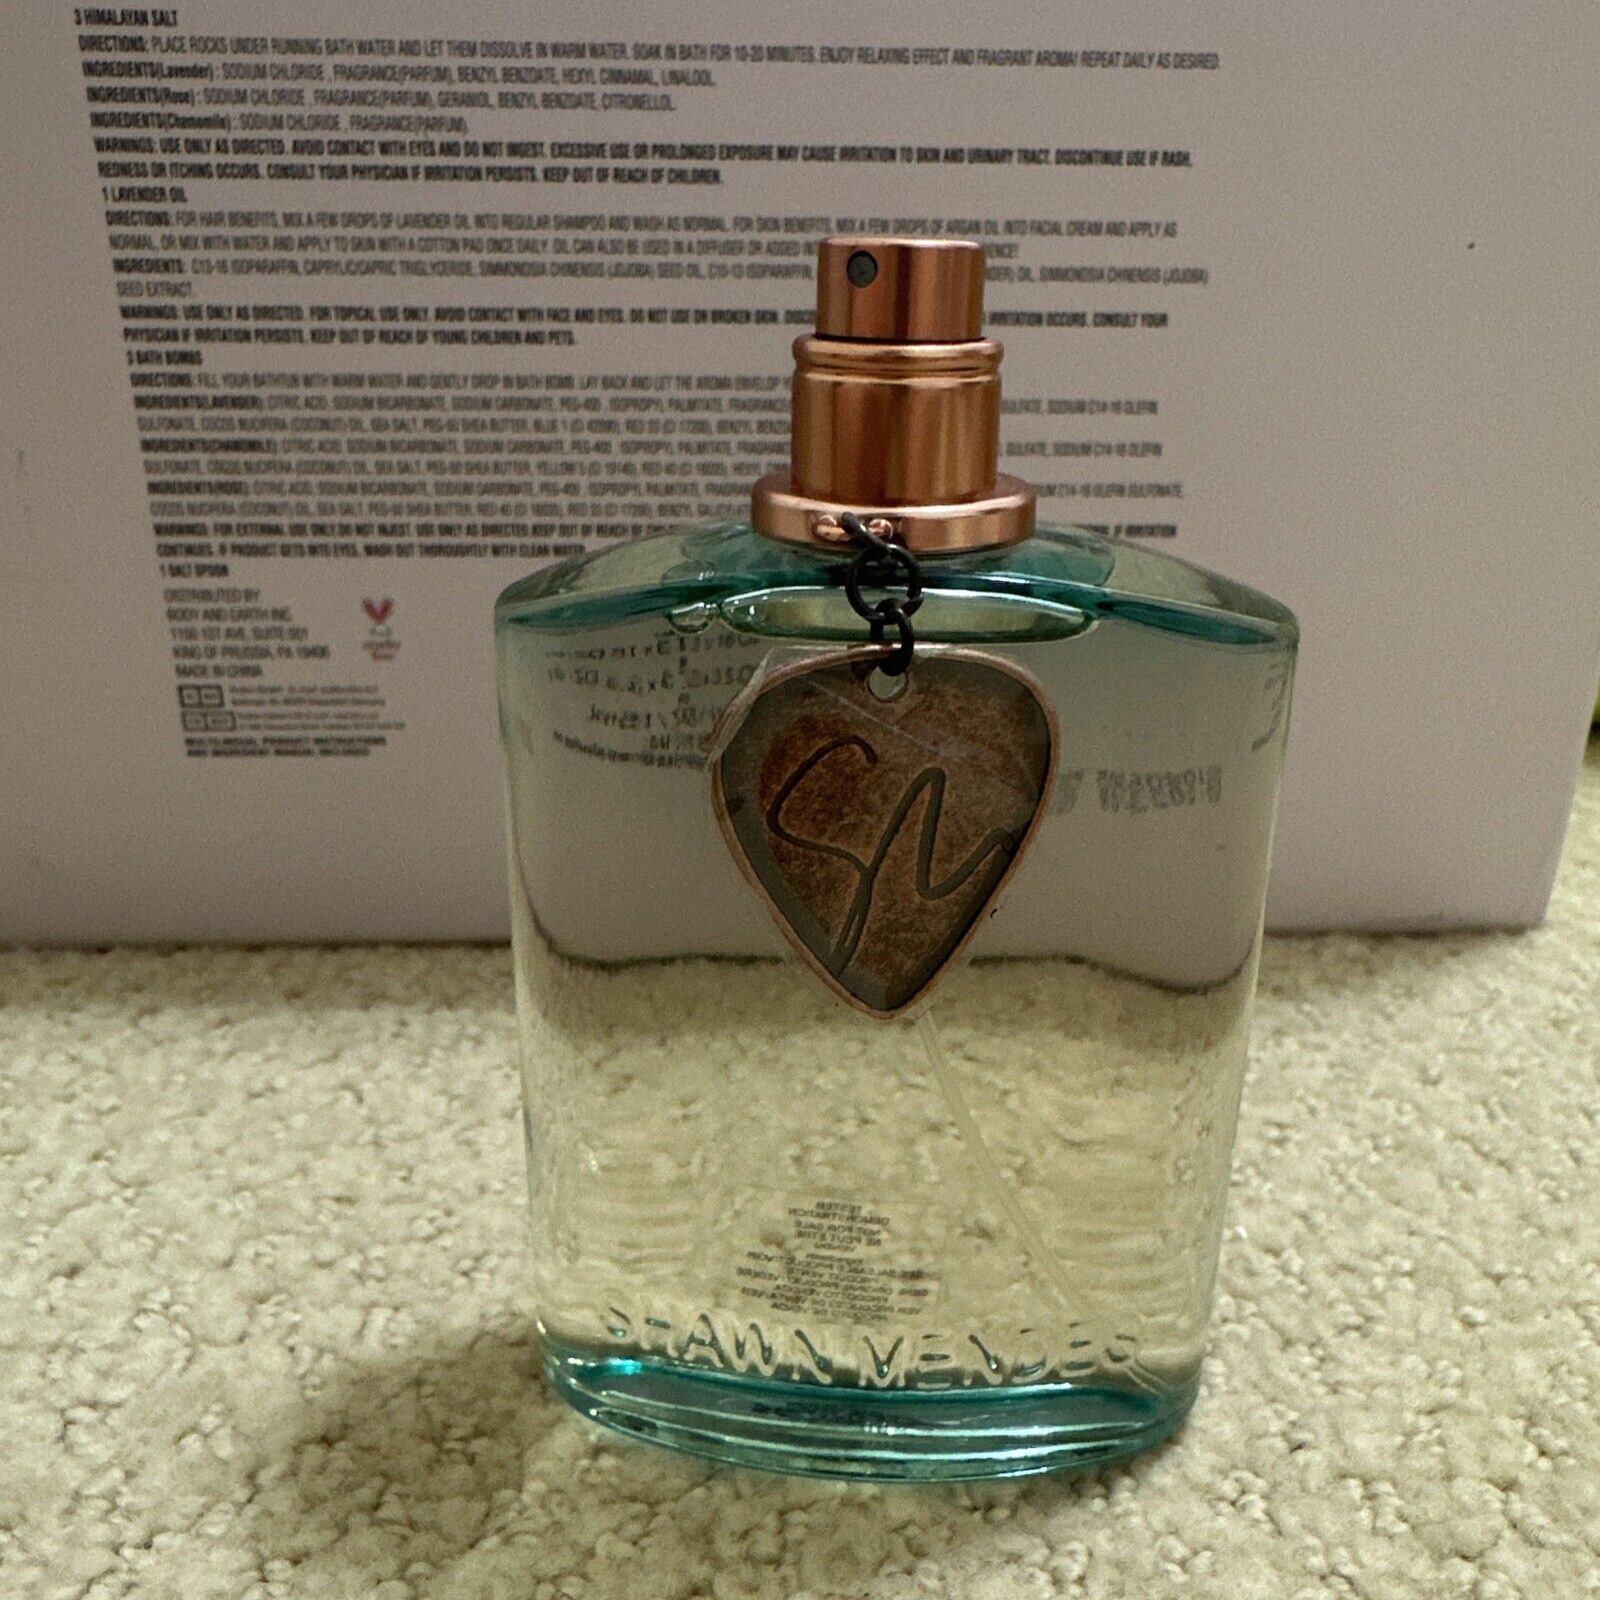 kærlighed etik kant Shawn Mendes Signature 3.4oz Unisex Eau de Parfum Spray 100ml Authentic  Original | eBay